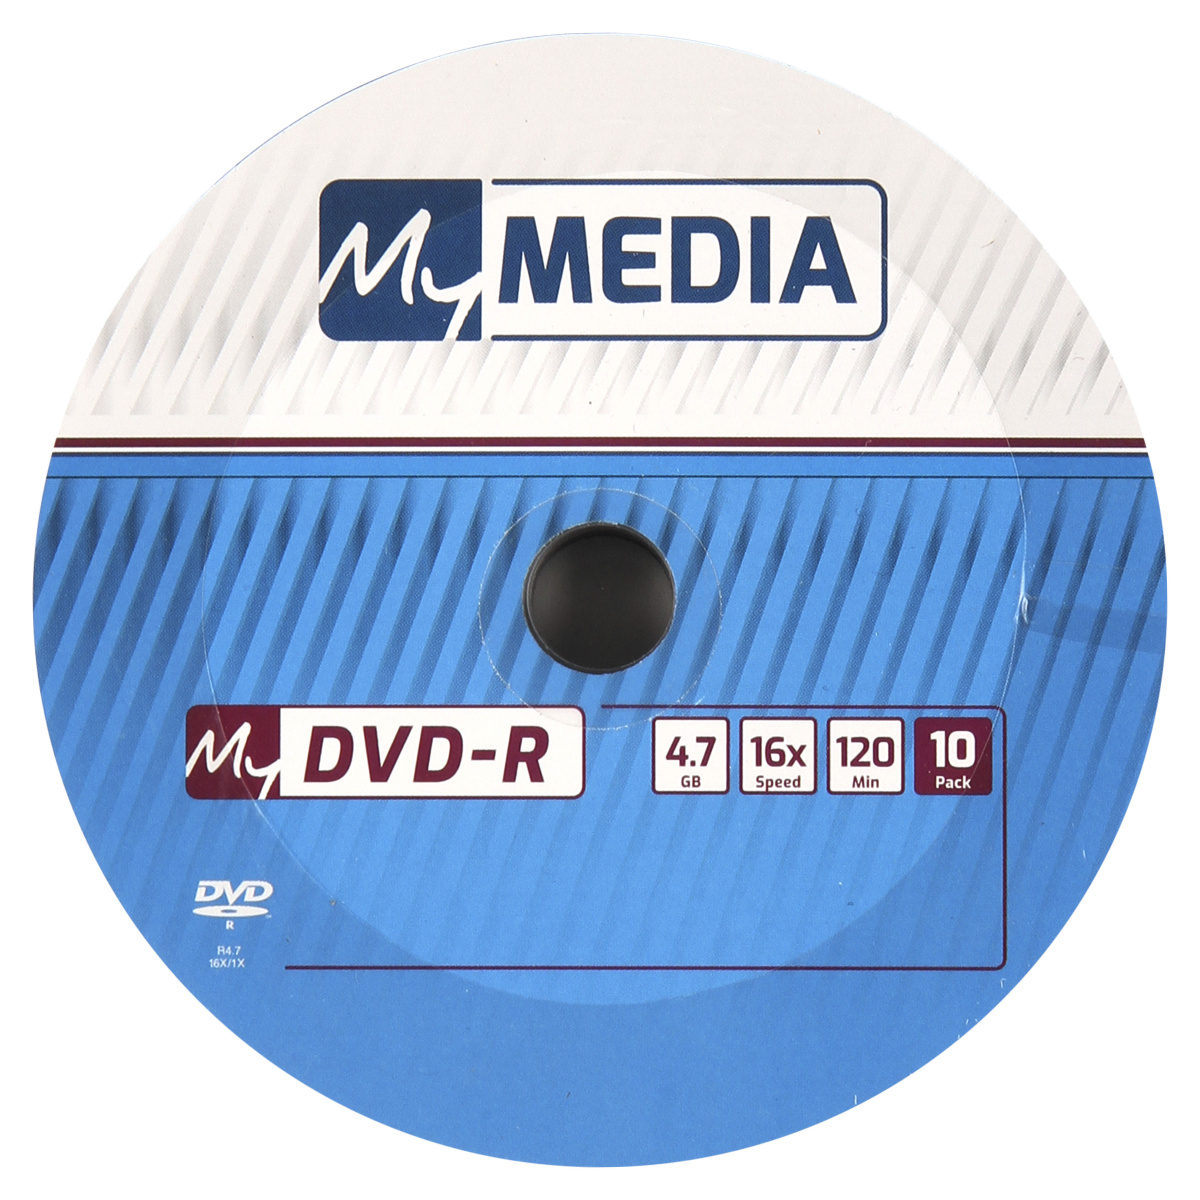 Диск Verbatim DVD-R, 4.7Gb, 16x, на шпинделе, 10 шт, MyMedia (69205)